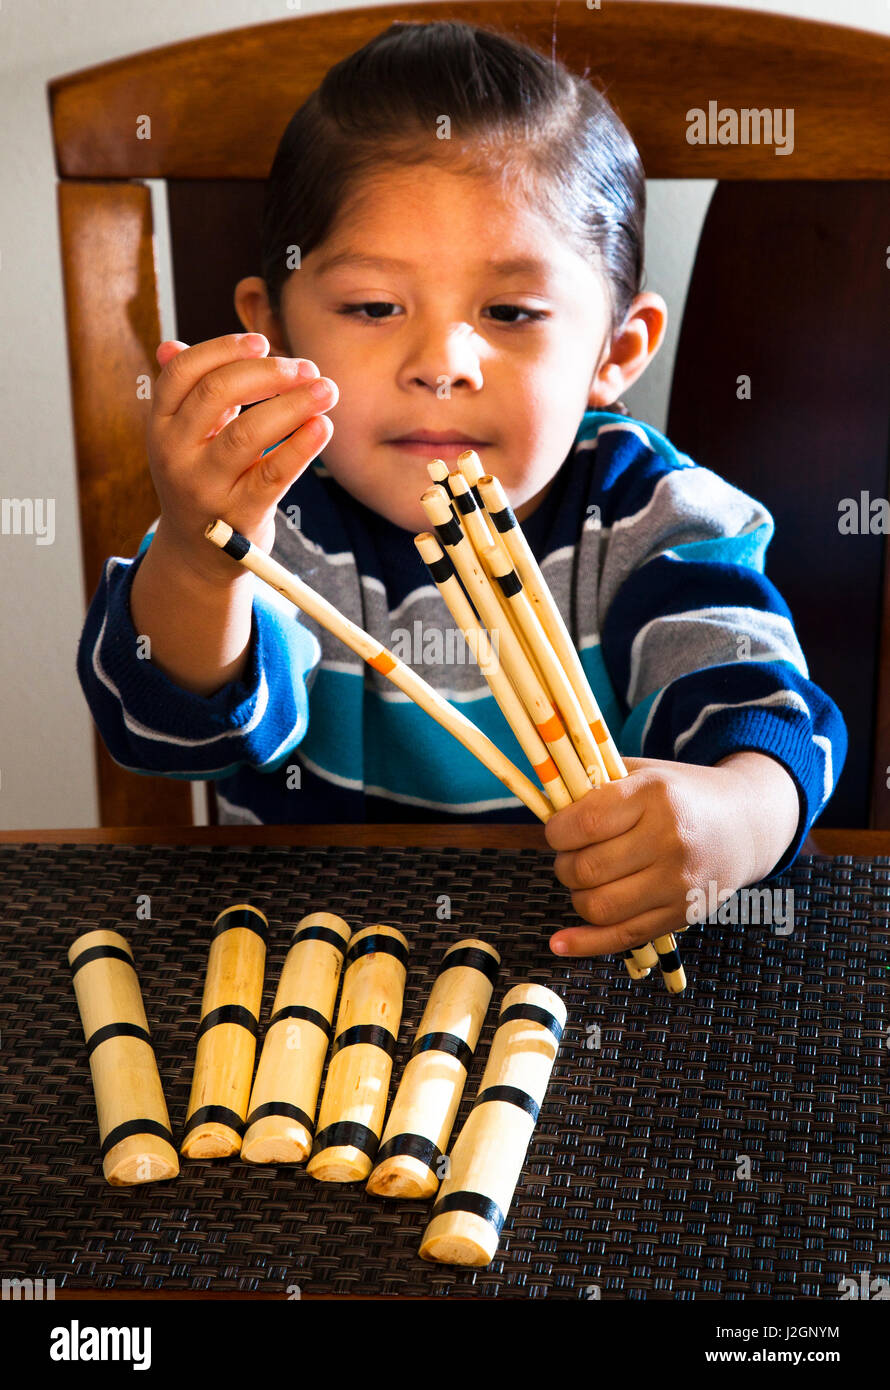 Native American enfant apprend à compter en utilisant des paquets de bois peint qui étaient des jouets traditionnels de beaucoup de tribus des Grandes Plaines (MR) Banque D'Images